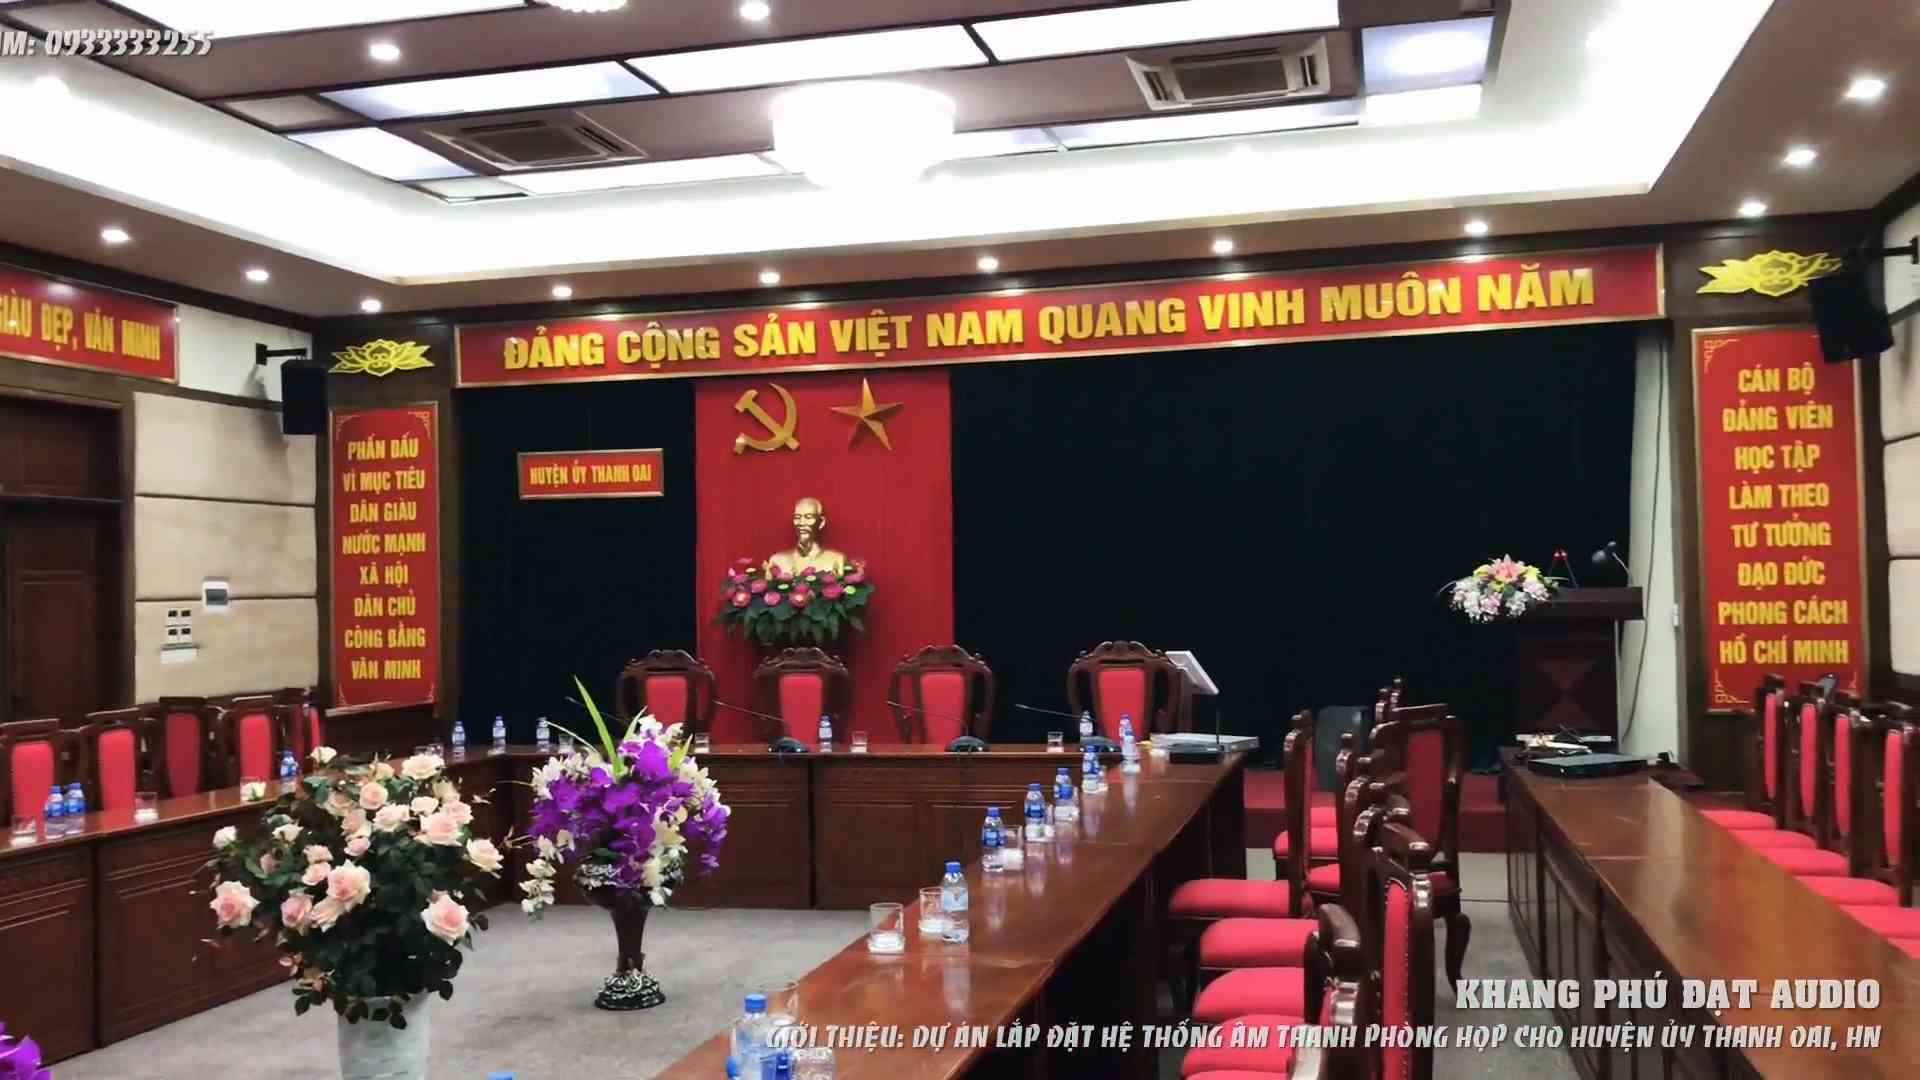 Lắp đặt hệ thống âm thanh phòng họp cho Huyện Uỷ Thanh Oai, HN